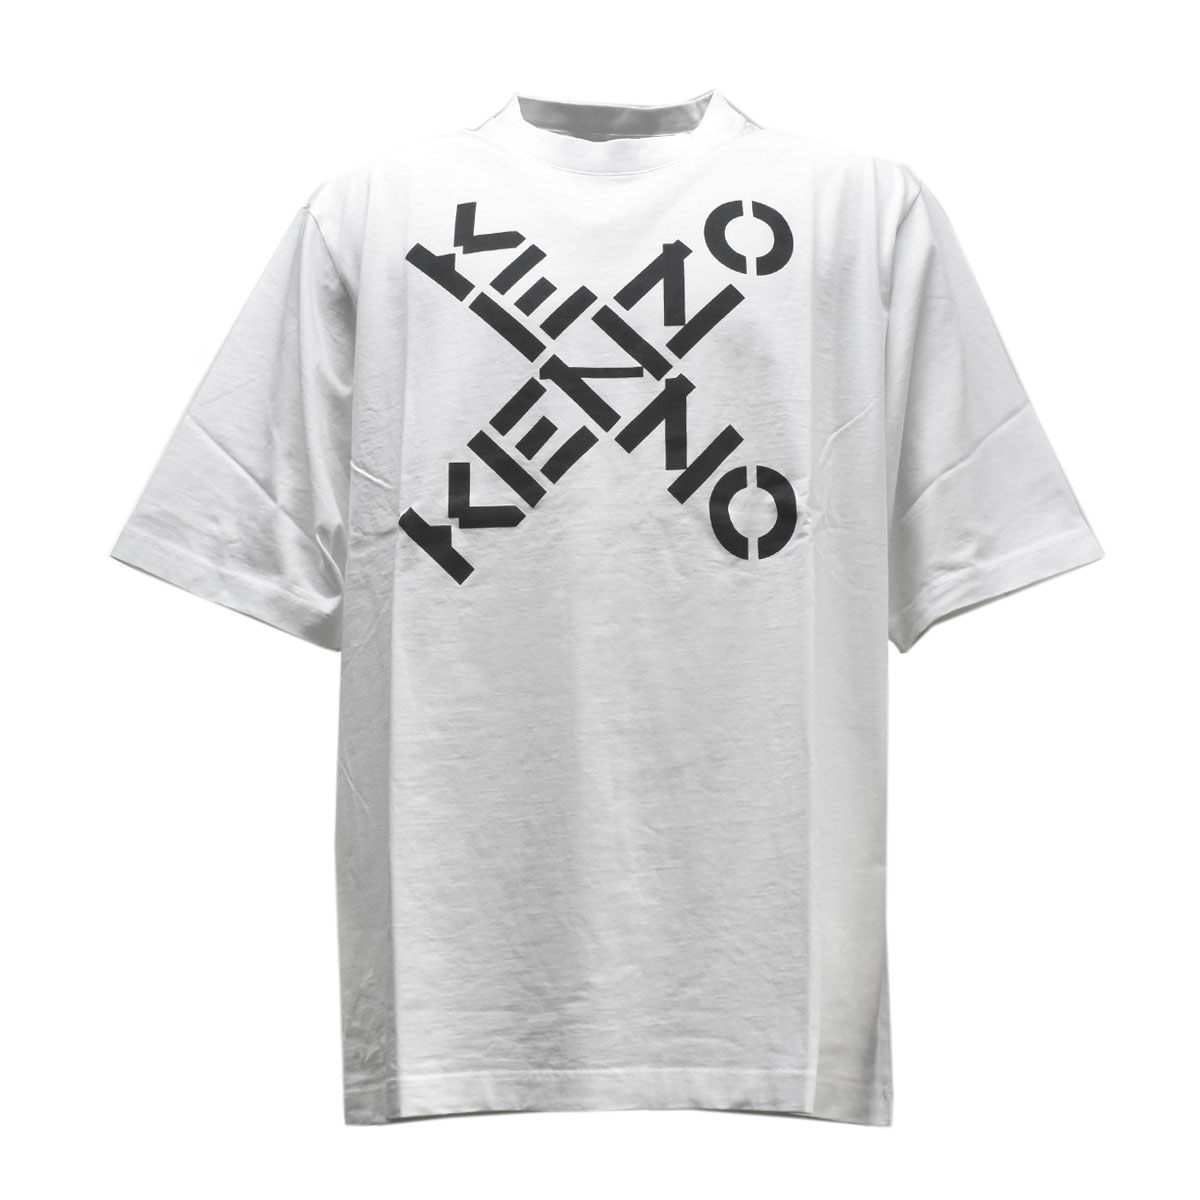 楽天市場 ケンゾー Kenzo メンズtシャツ 半袖 メンズ ロゴ ブランドロゴ プリント オーバーサイズtシャツ Sサイズ ホワイト Fa65ts5024sj Kenzo Sport Oversize T Shirt 1 White 1st Street